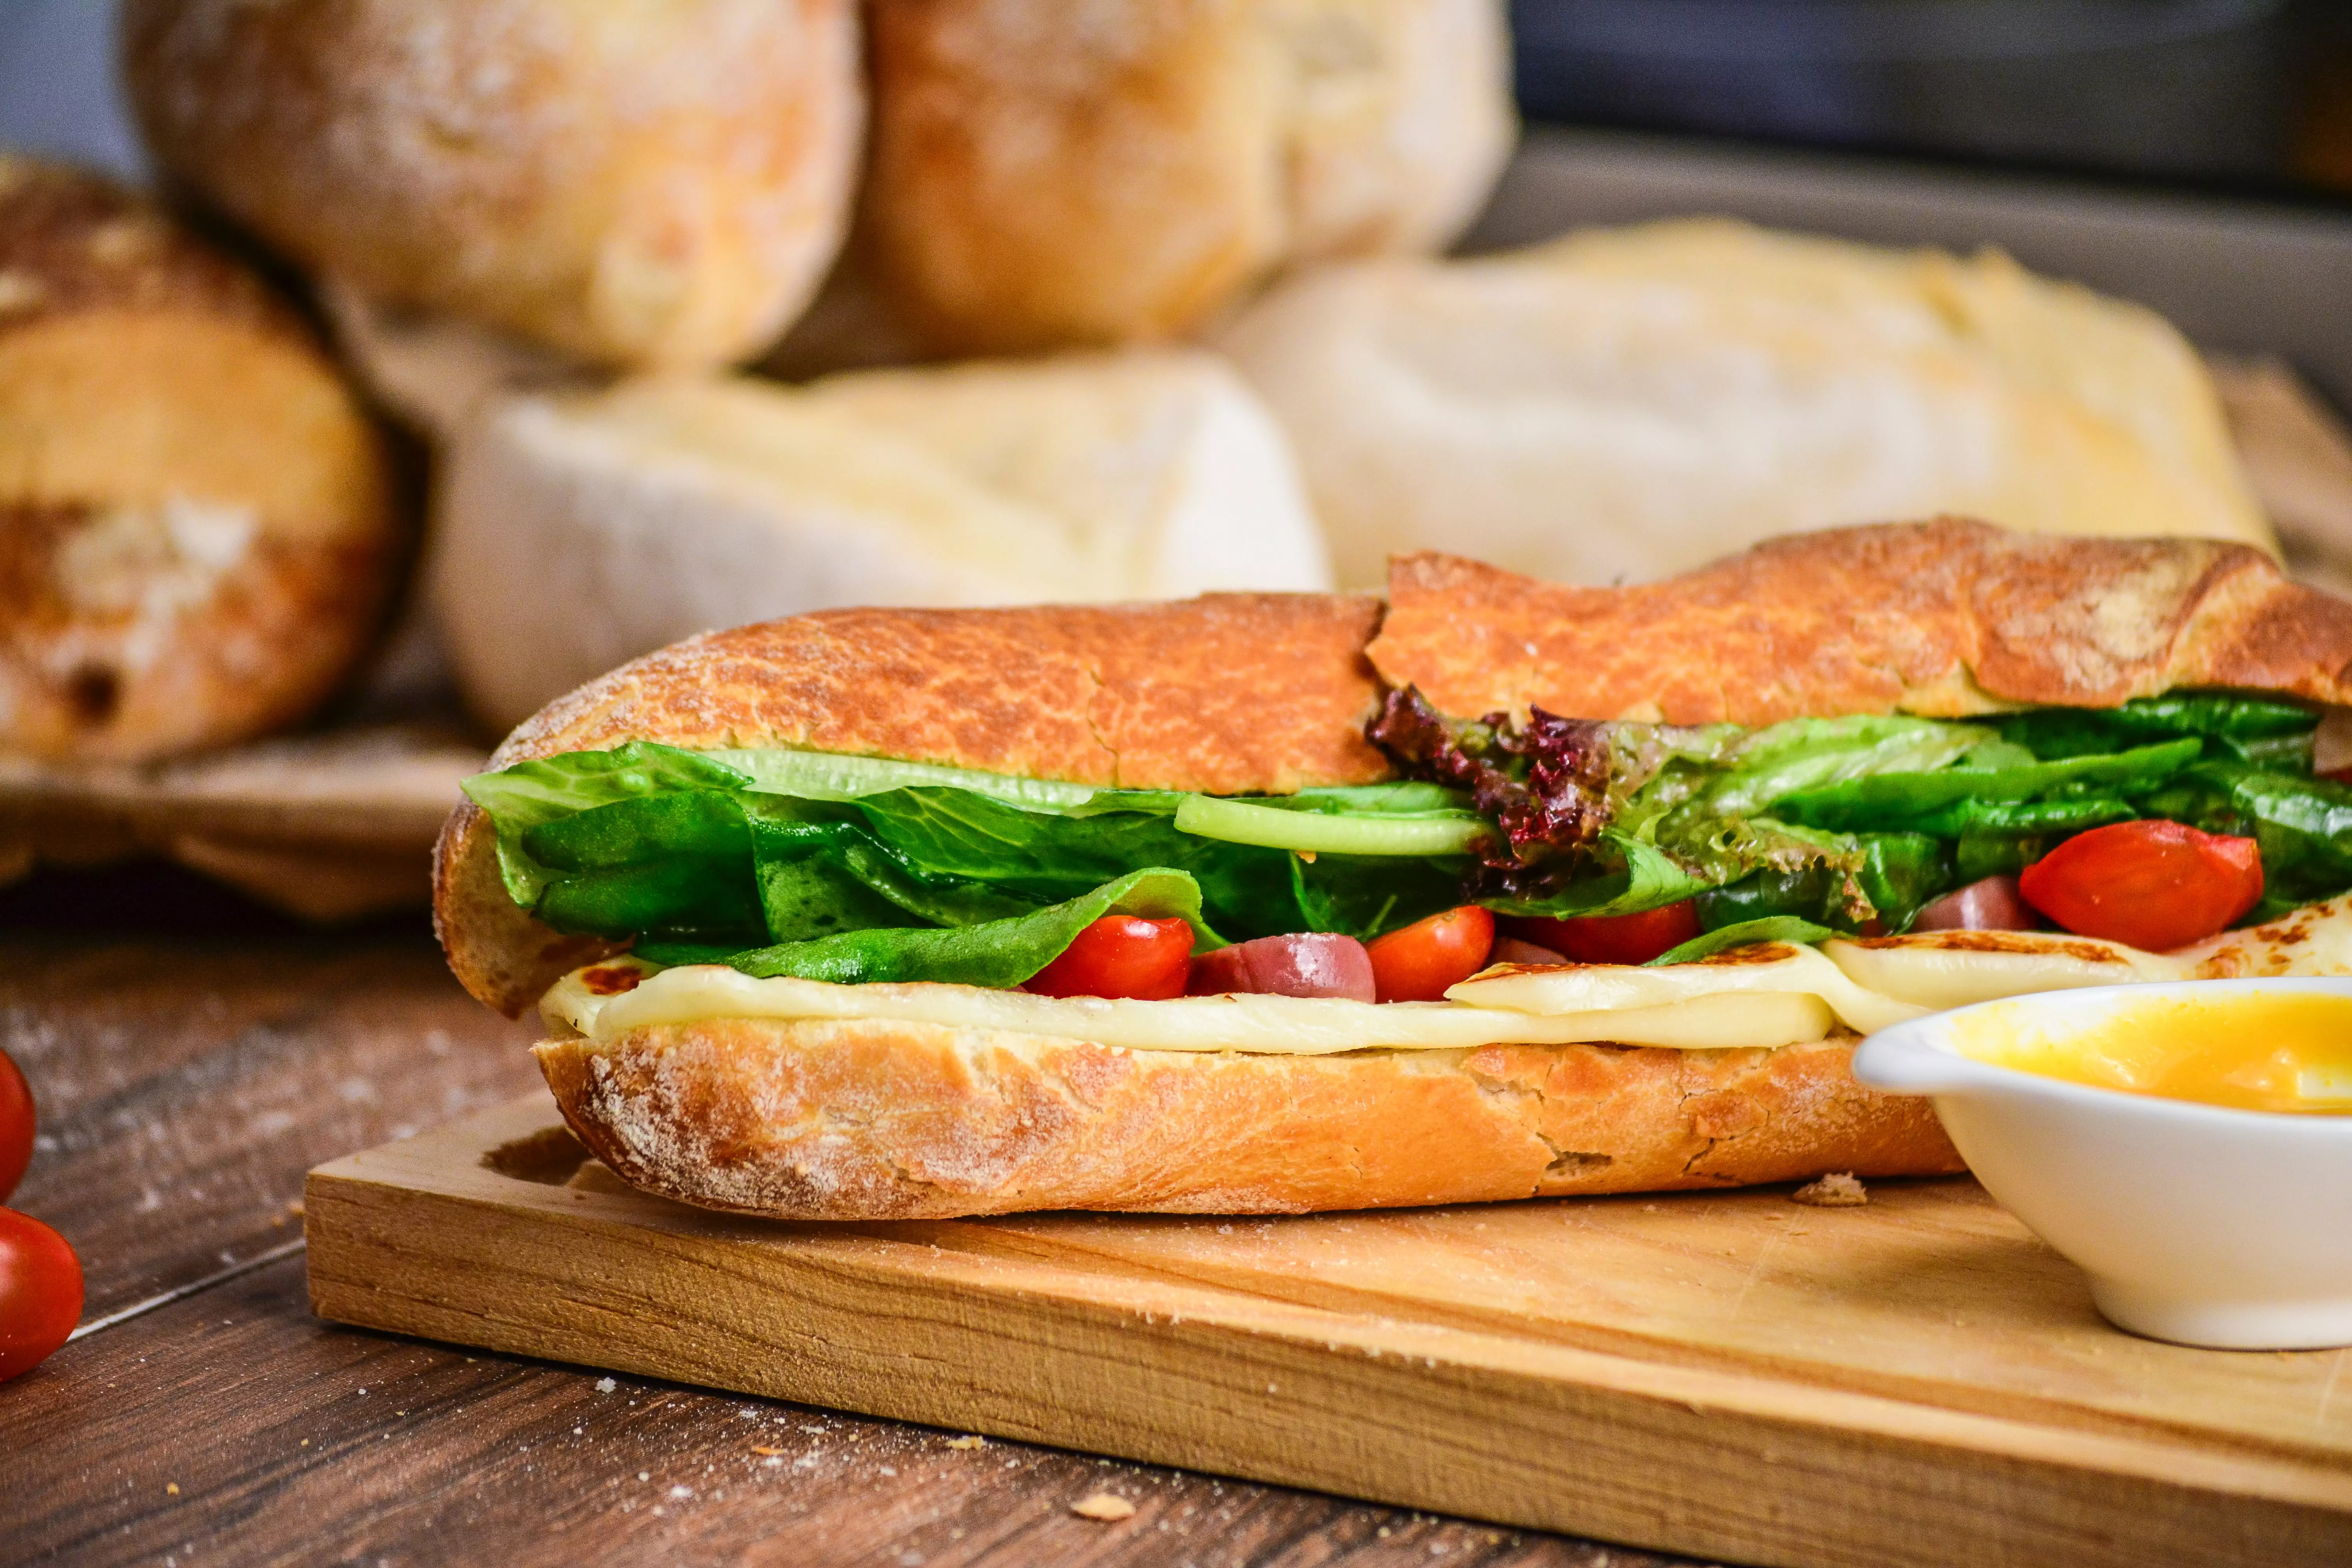 Хлеб для сэндвичей в Subway суд не признал хлебом